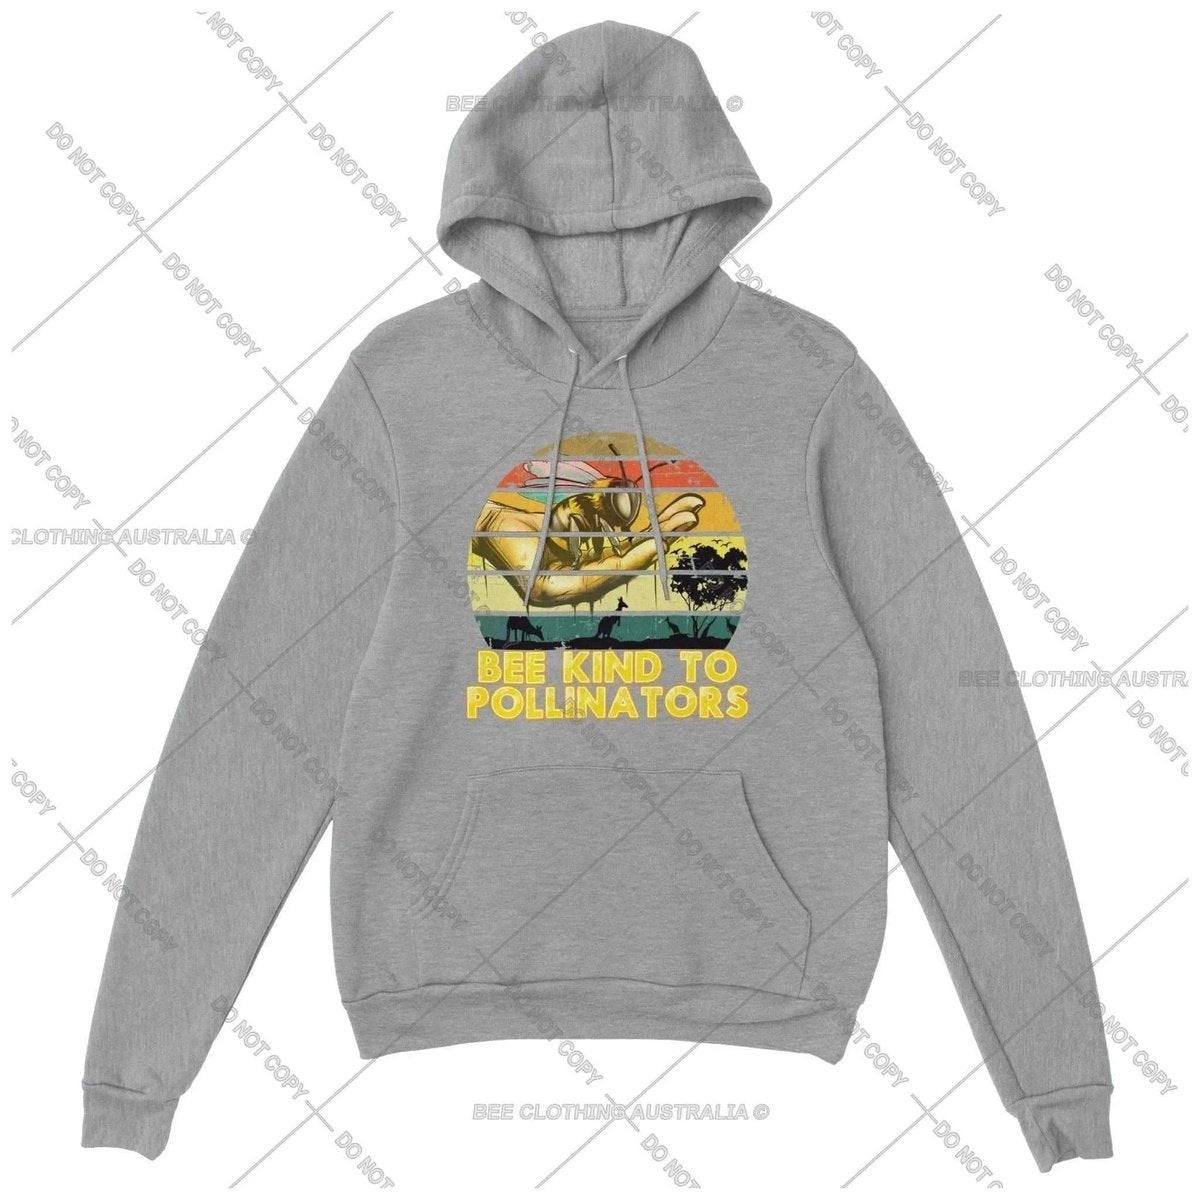 Bee Kind To Pollinators Hoodie - Retro Vintage Bee Hoodie - Premium Unisex Pullover Hoodie Adults Pullover Hoodie Sports Grey / XS Bee Clothing Australia